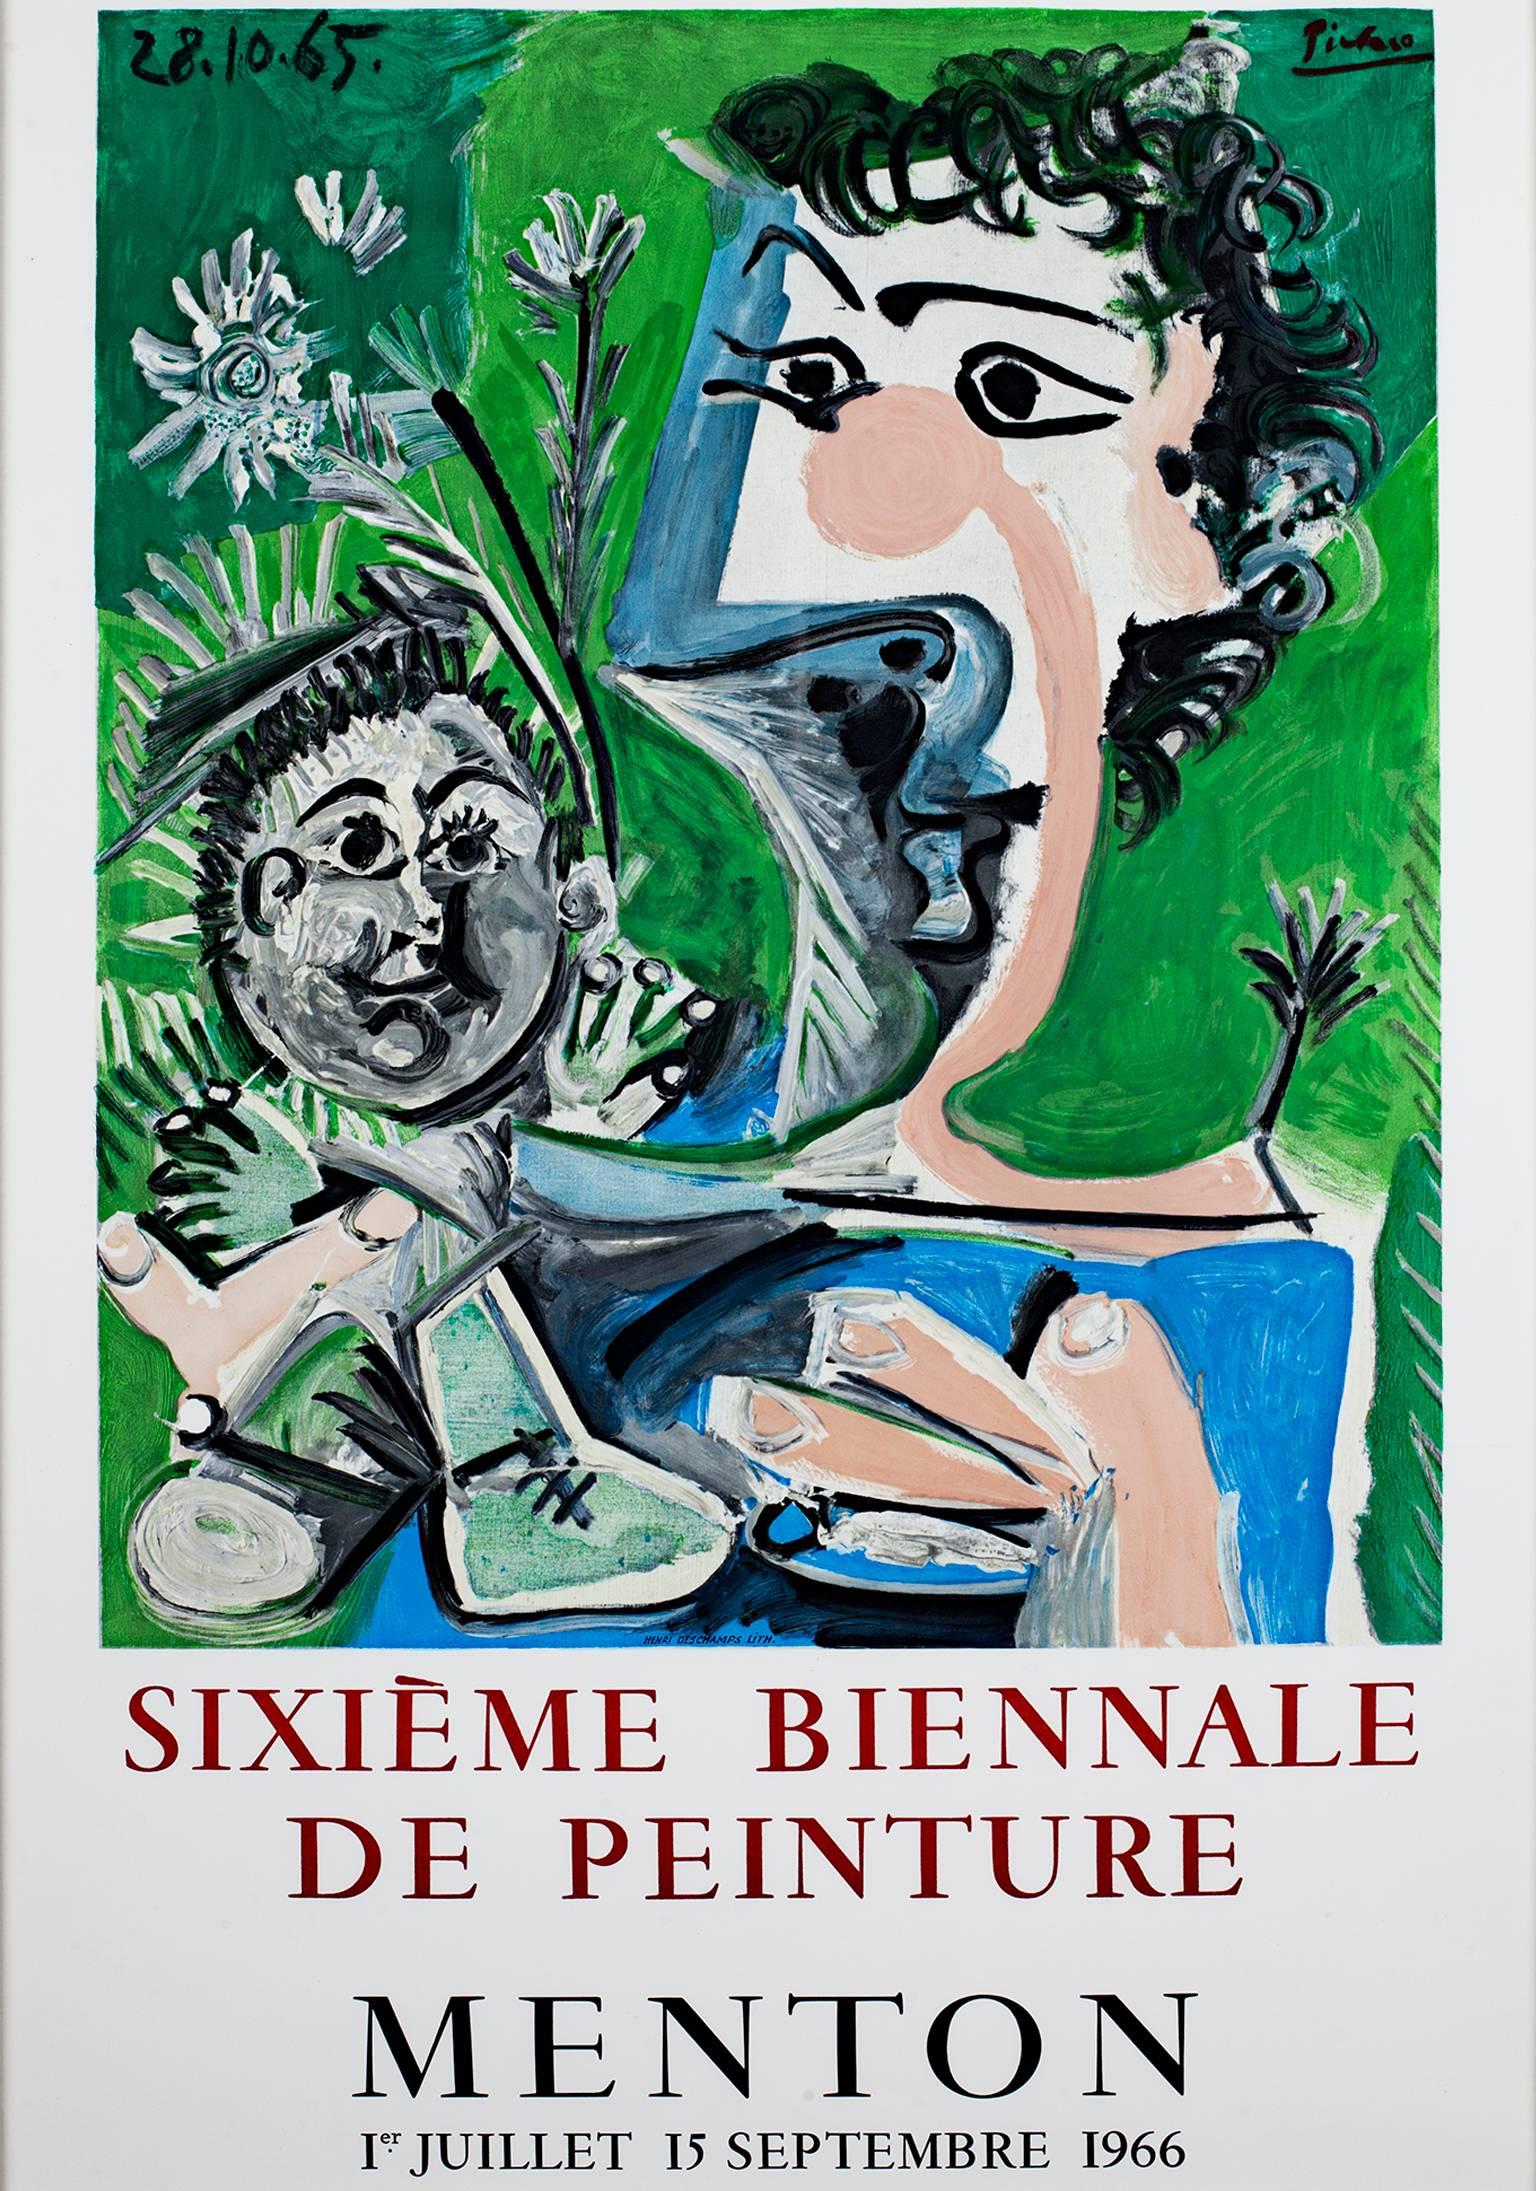 (after) Pablo Picasso Figurative Print - "Sixieme Biennale de Peinture, " Original Vintage Lithographic Poster 